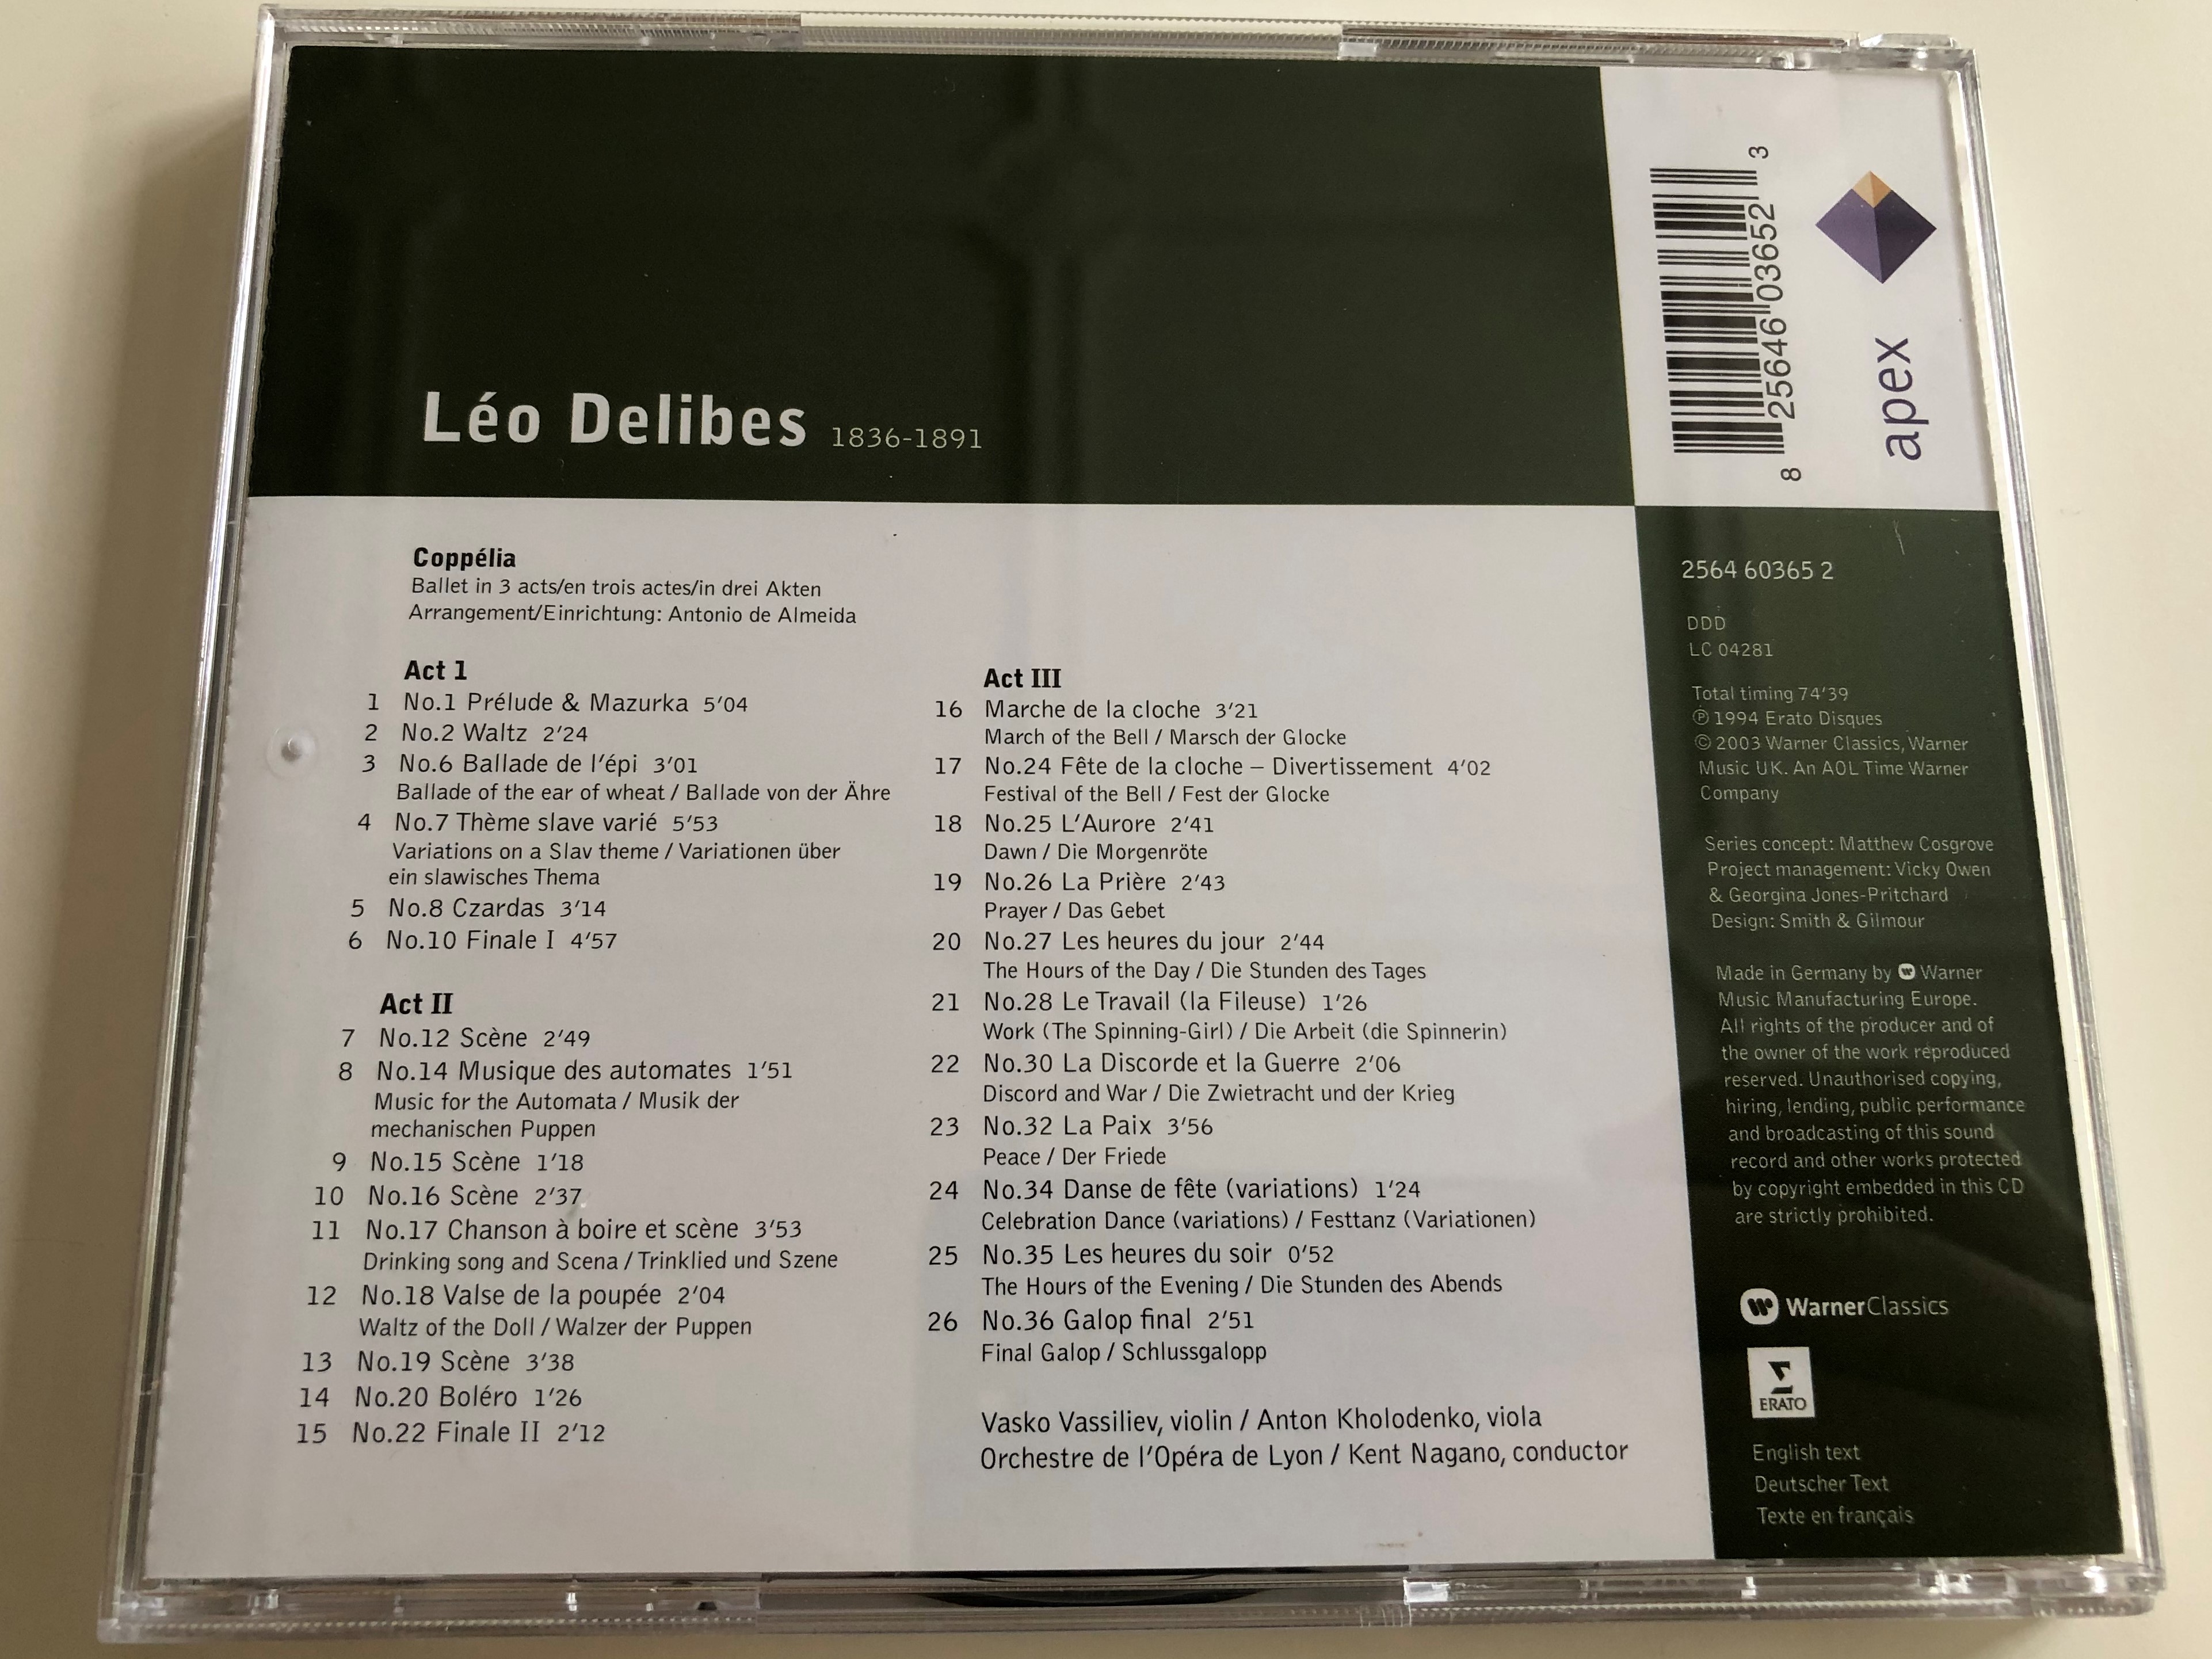 delibes-copp-lia-highlights-orchestre-de-l-op-ra-de-lyon-conducted-by-kent-nagano-audio-cd-2003-apex-warner-classics-7-.jpg